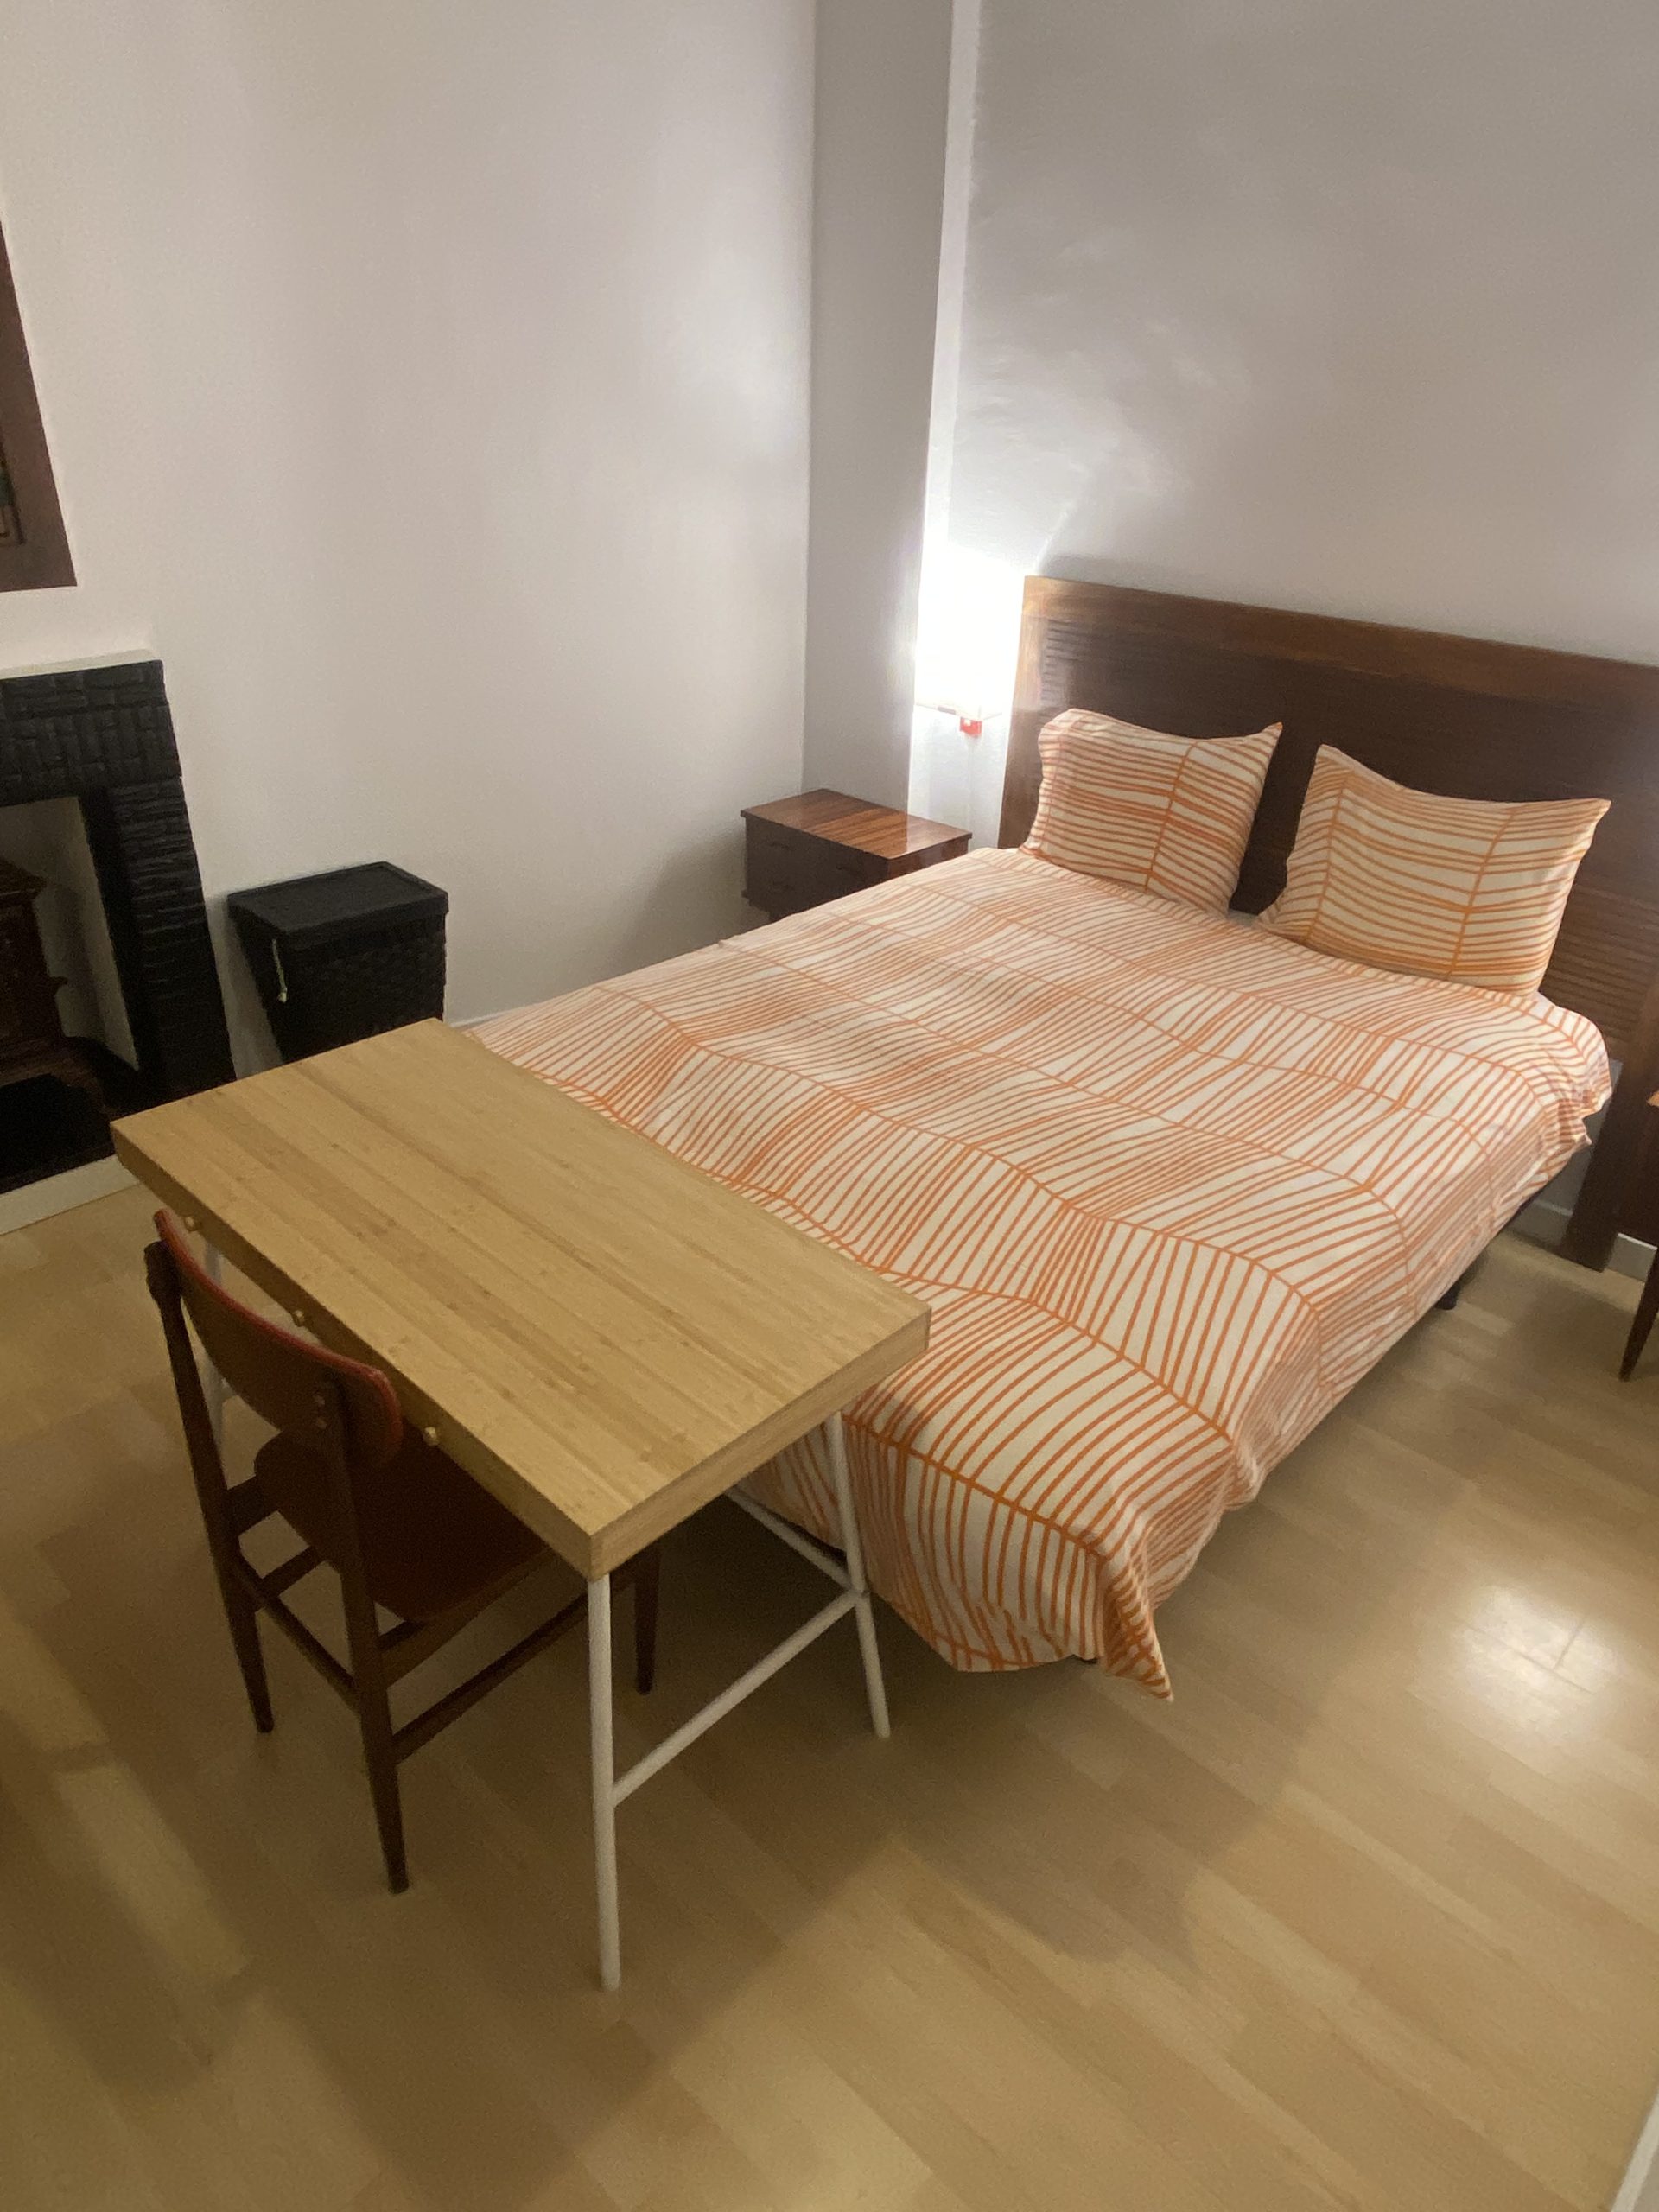 Rental apartment in Las Ramblas Barcelona